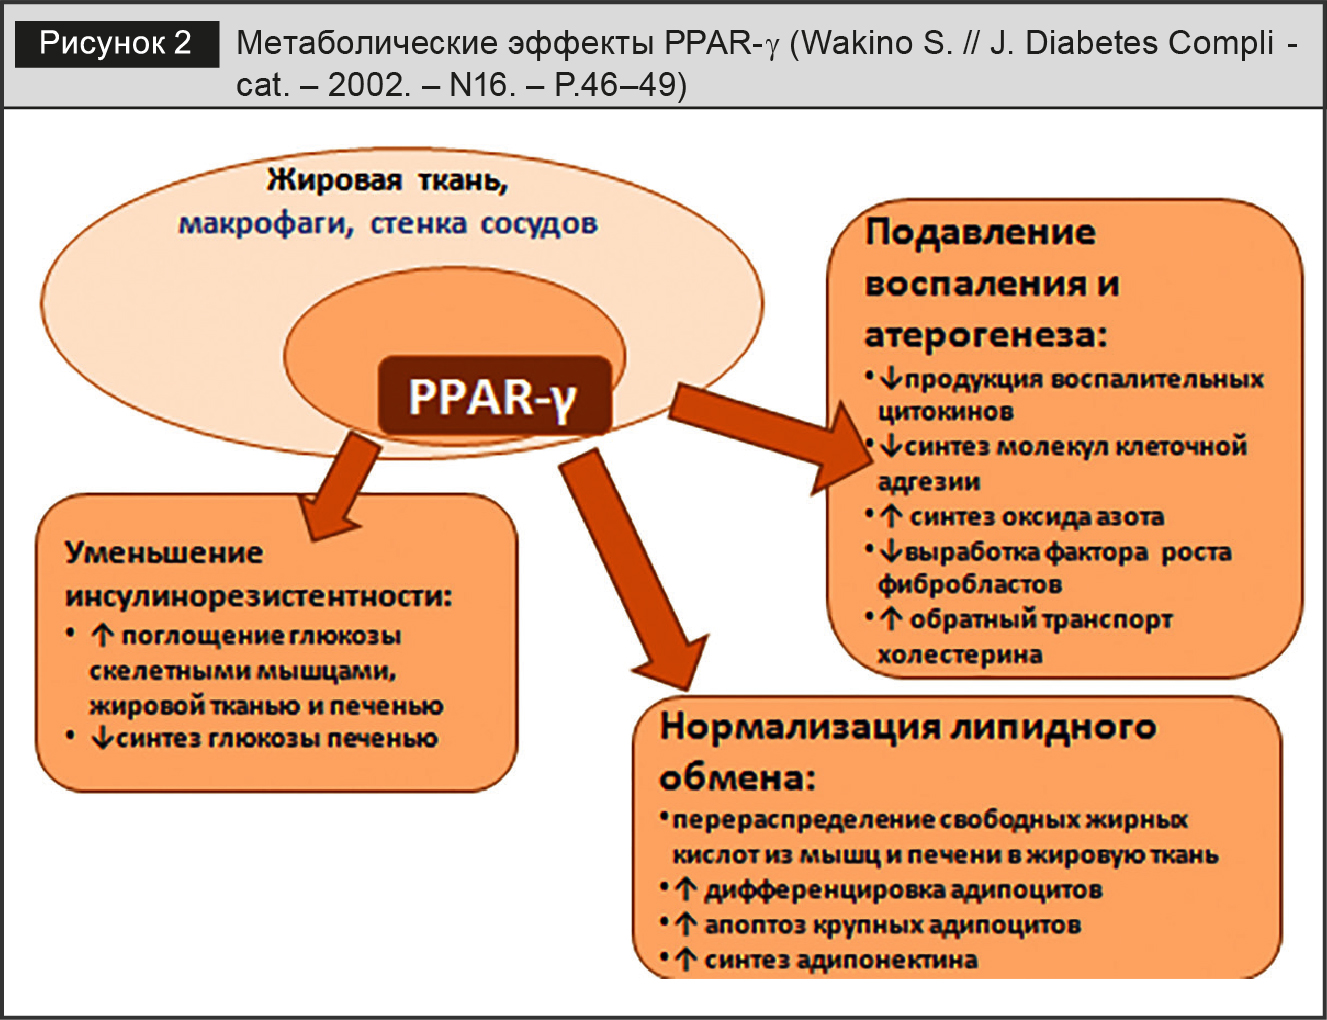 Метаболические эффекты PPAR-γ